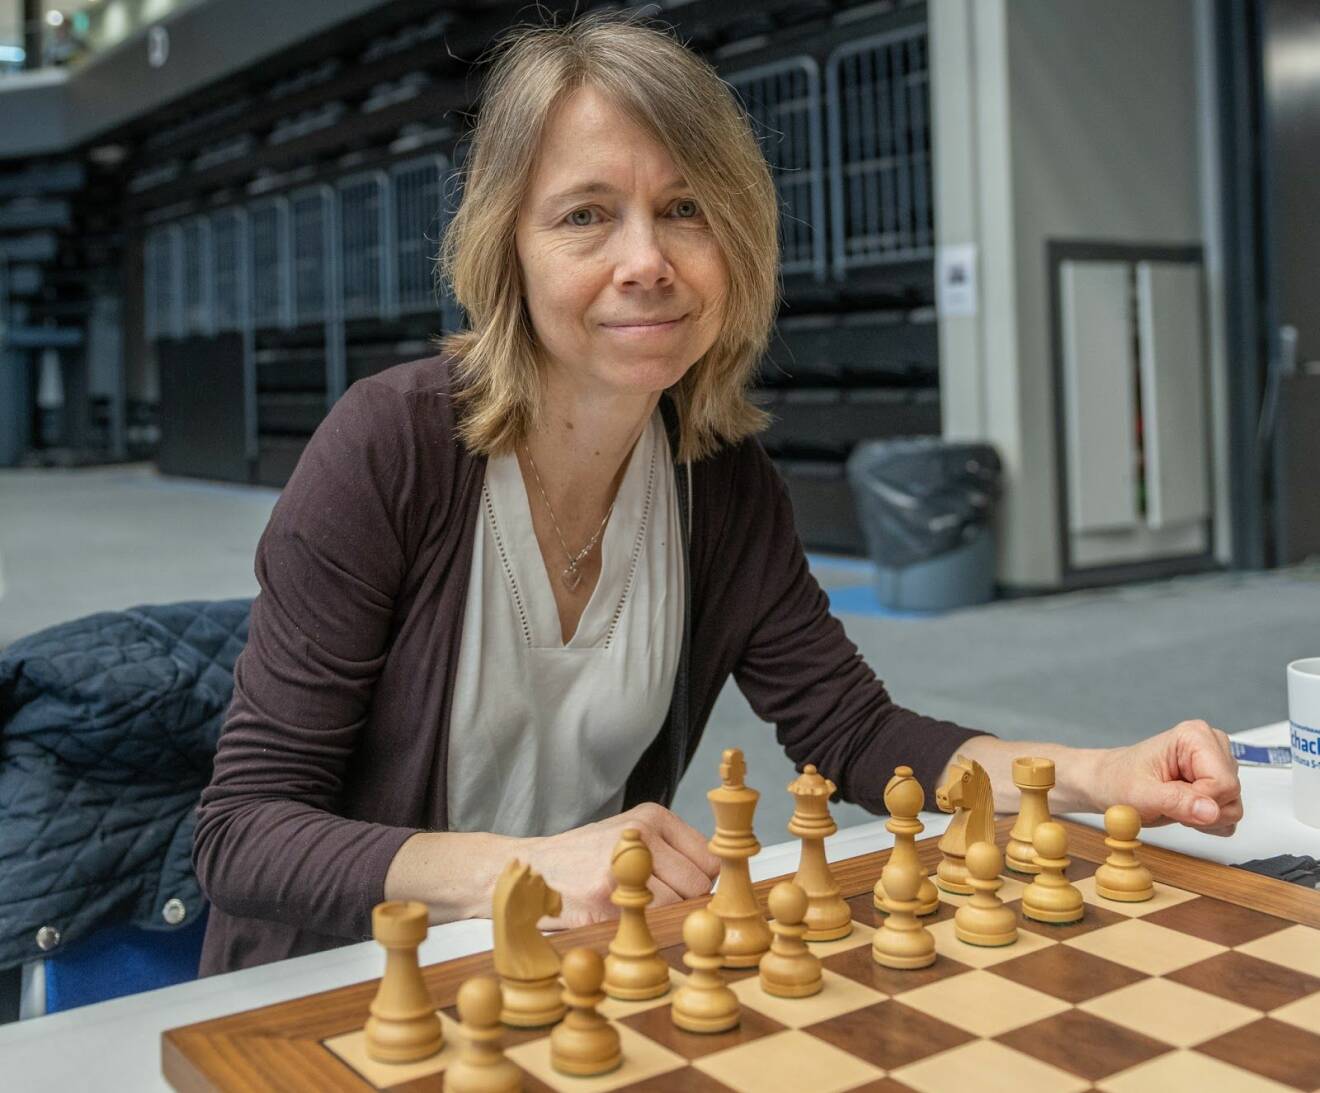 Schackproffset Pia Cramling vid ett uppställt schackbräde.